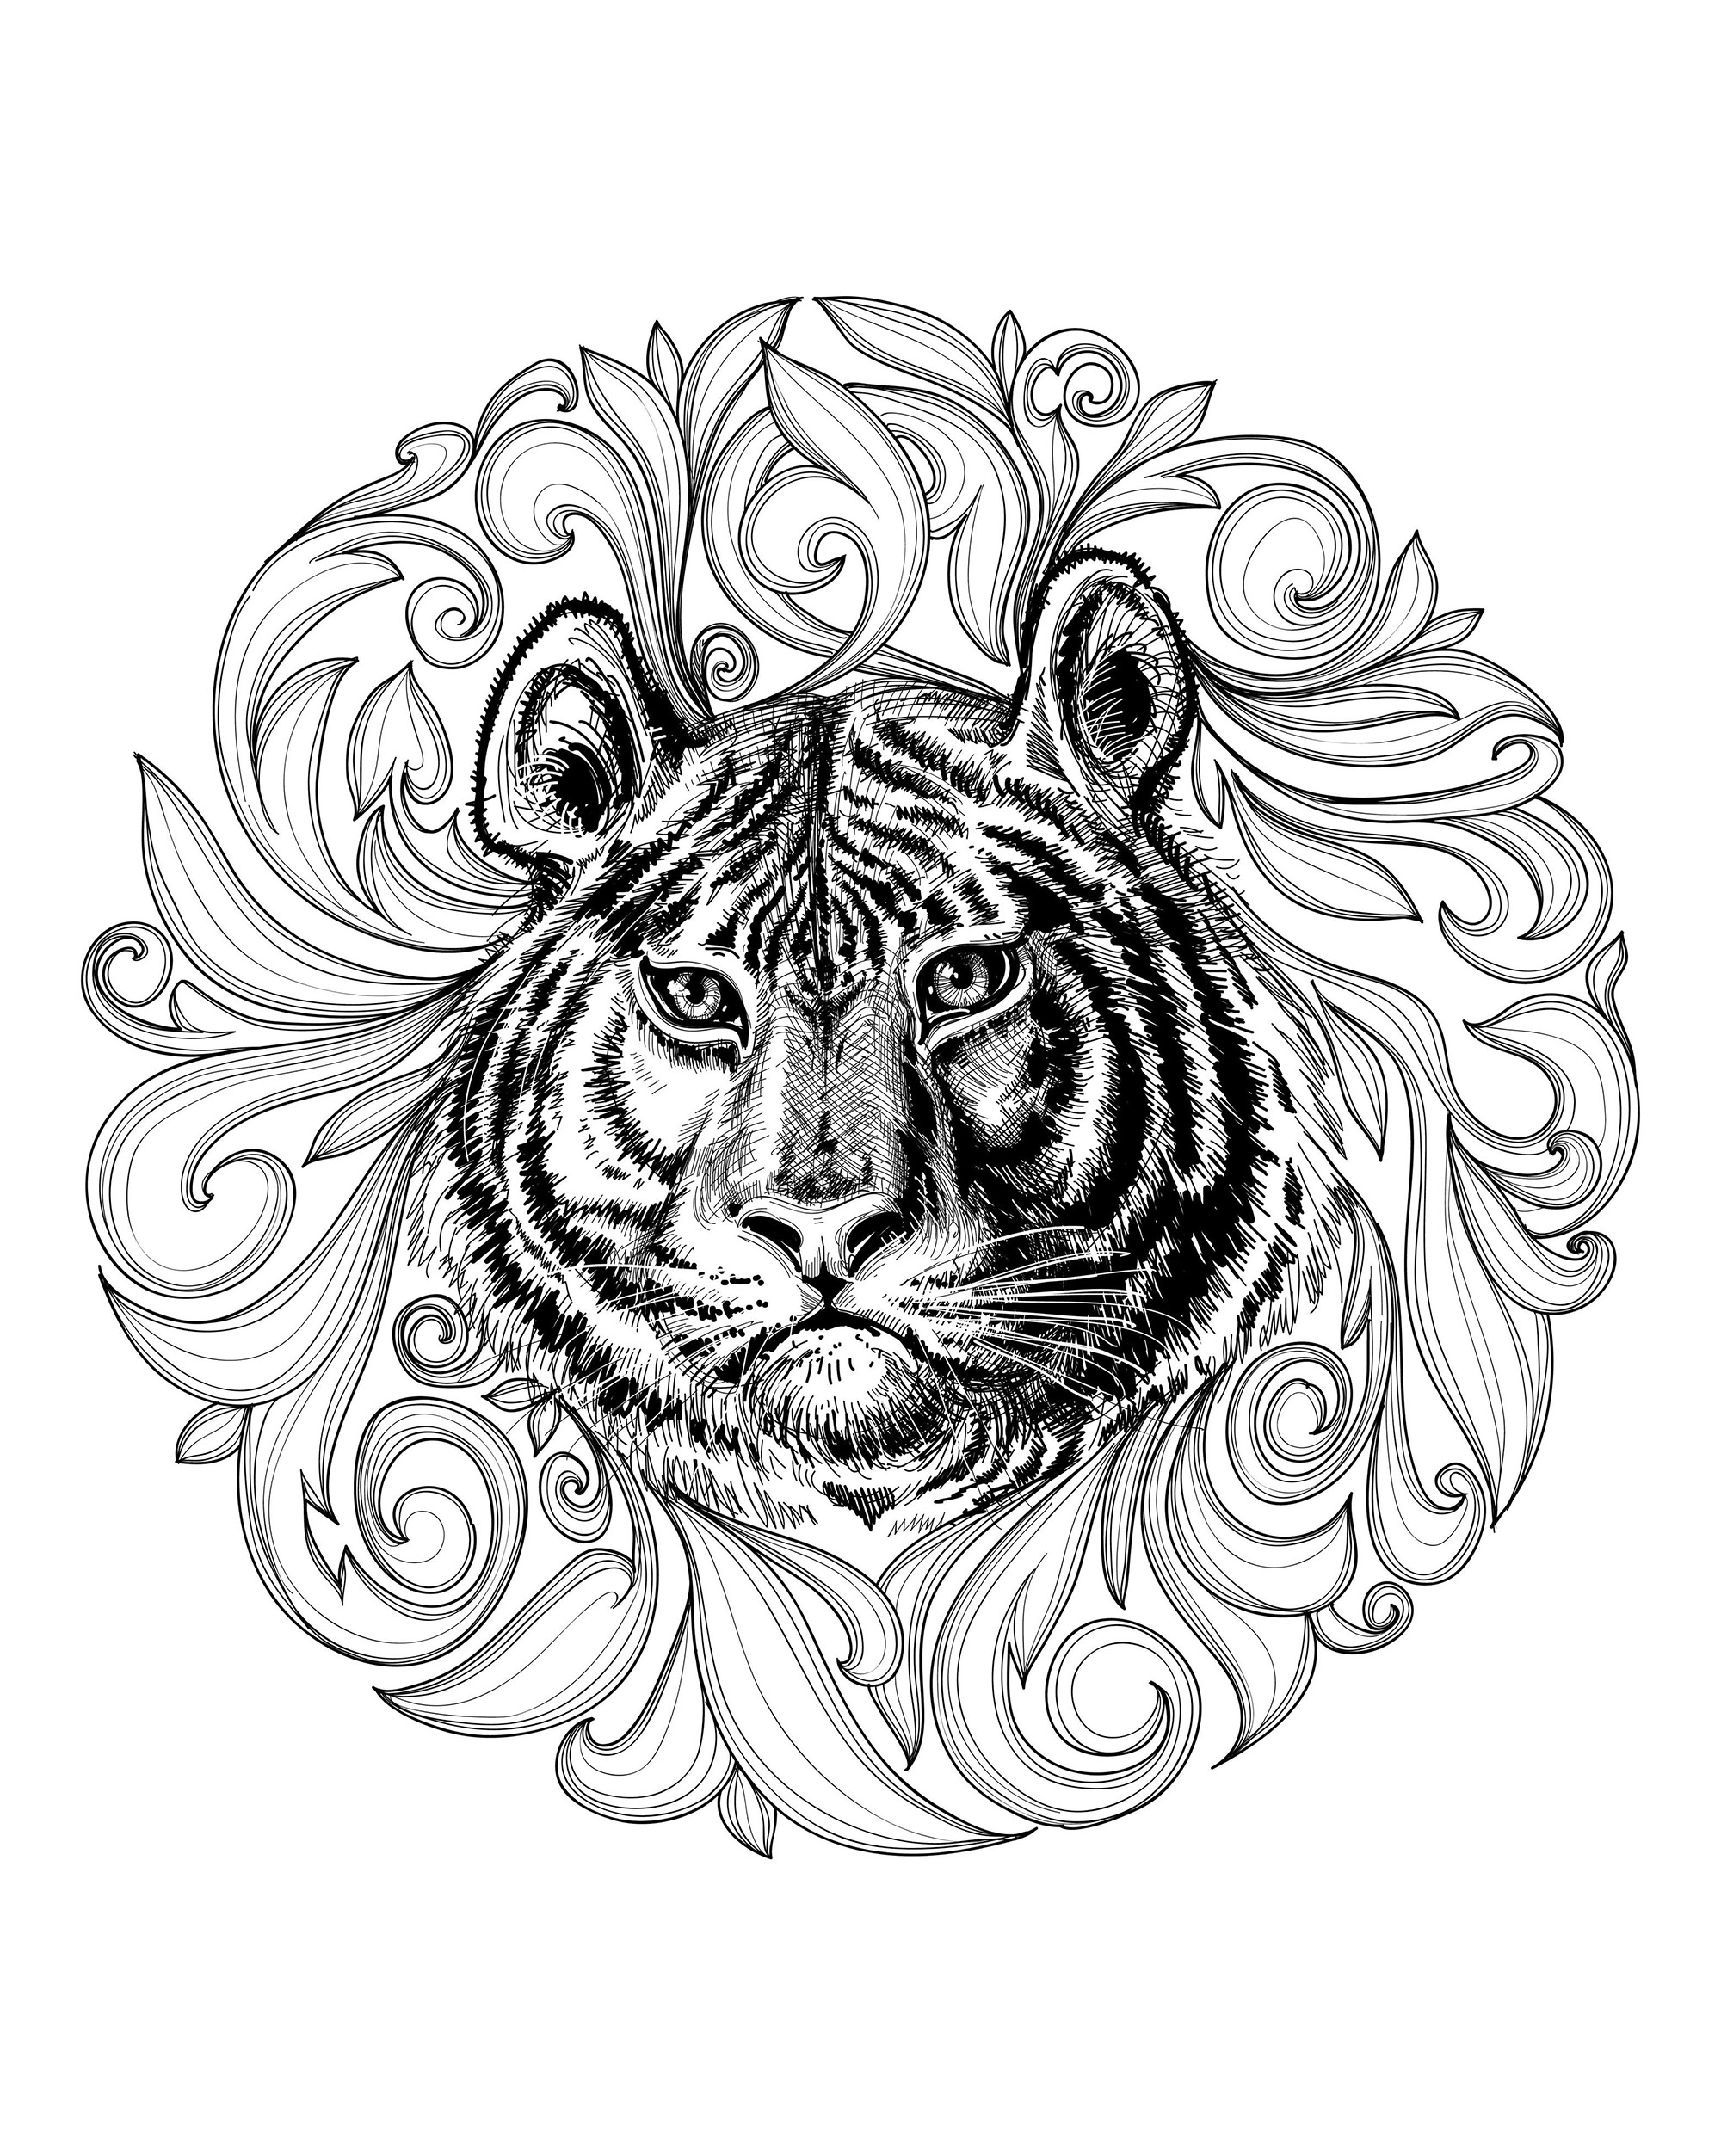 Desenhos fáceis gratuitos para colorir de Tigres, Artista : torky #NOLINK   Fonte : 123rf